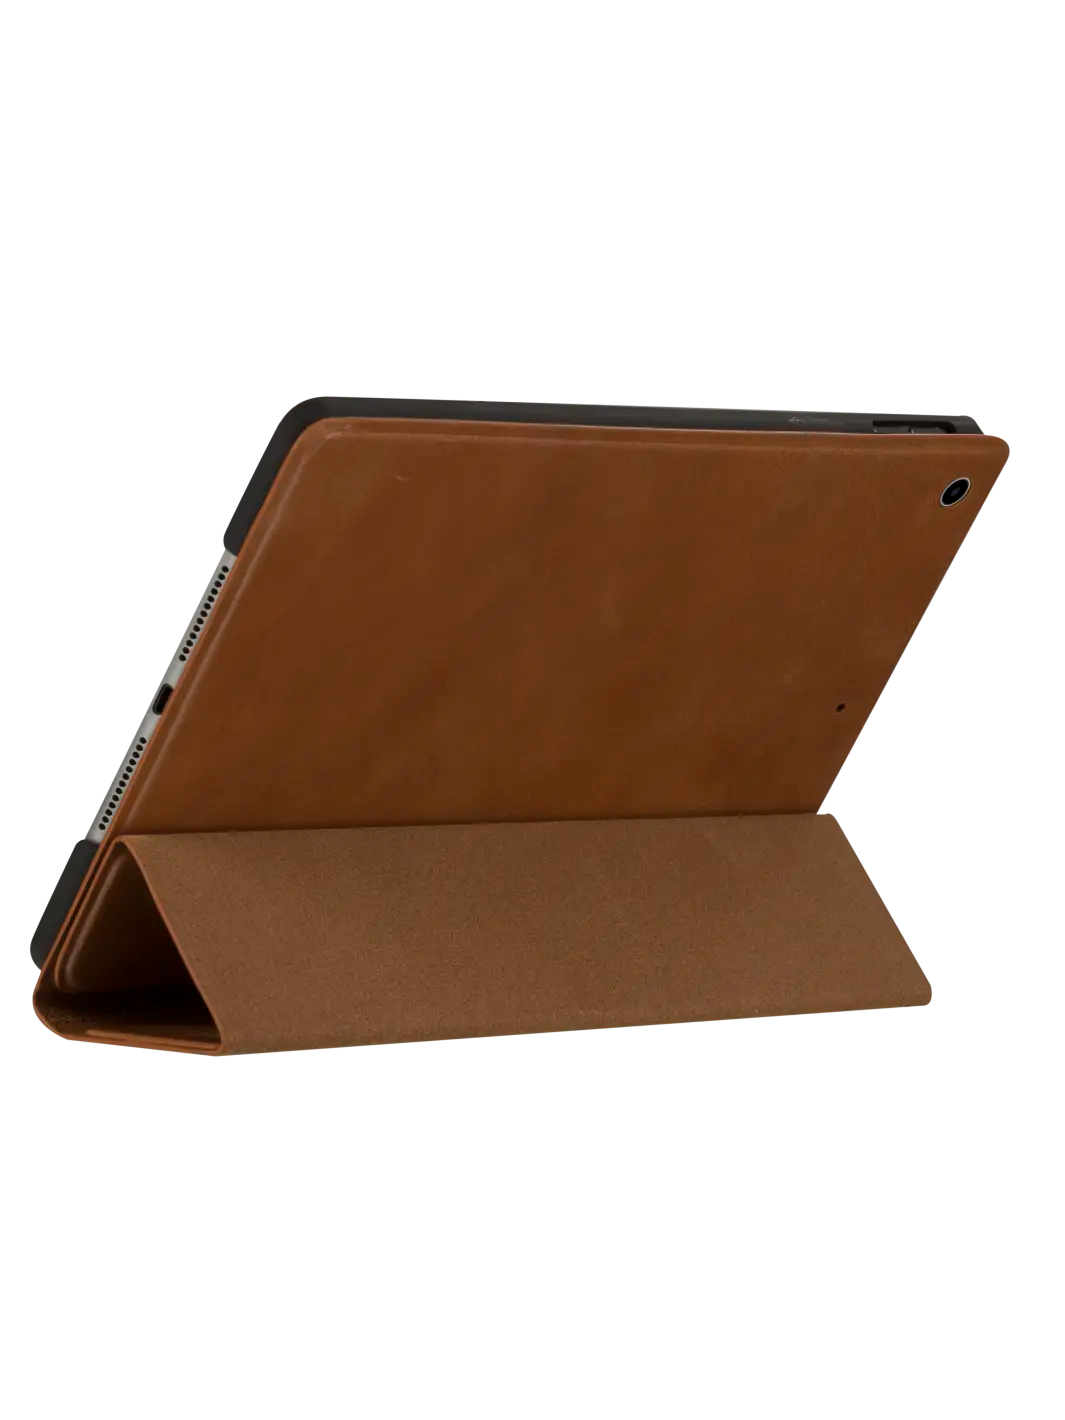 Risskov iPad case Tan iPad 10.2" (7/8/9th Gen) iPad Cases